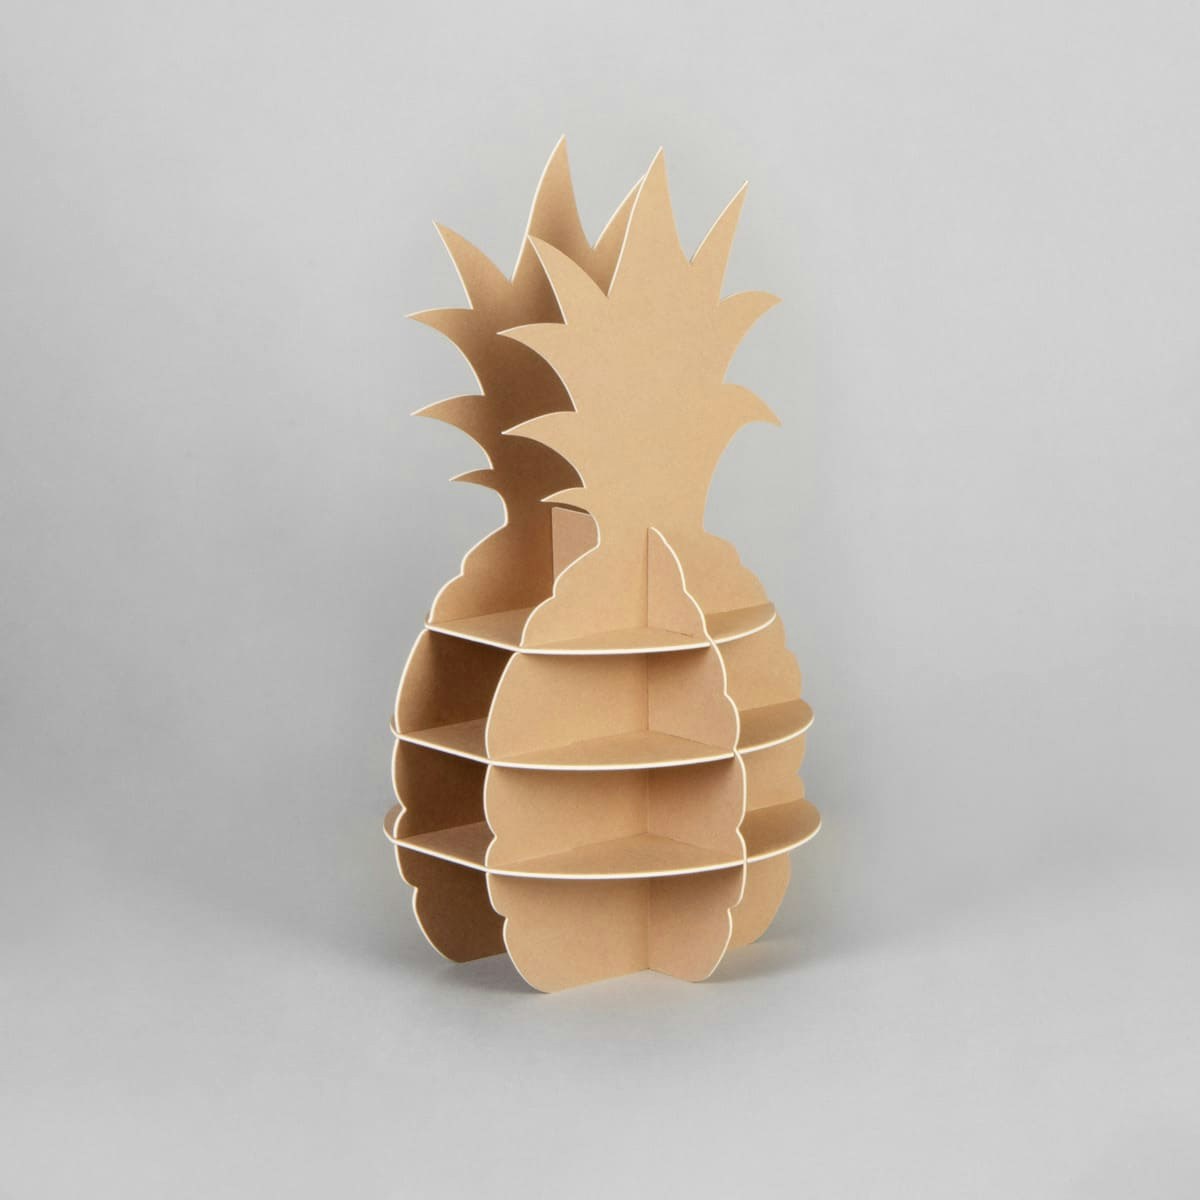 Floor display pineapple made of KROMA Kraft